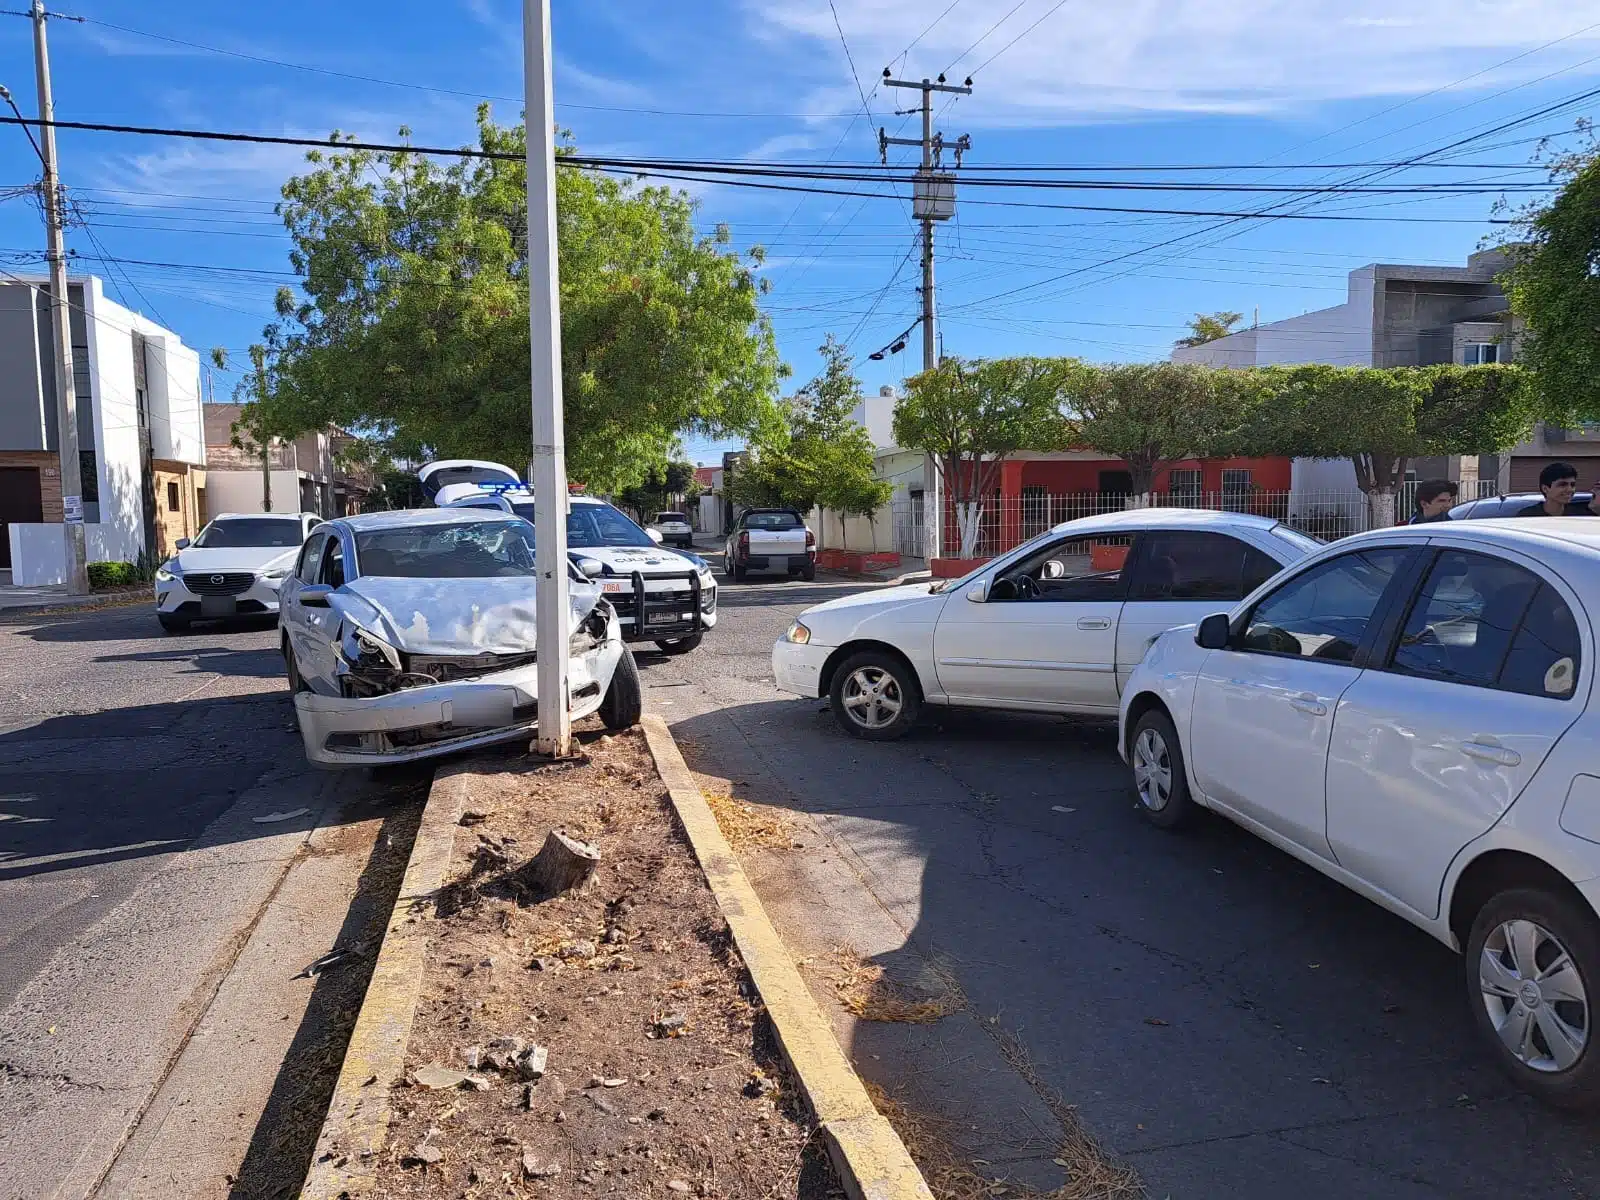 Carros chocados tras un accidente tipo carambola en Culiacán